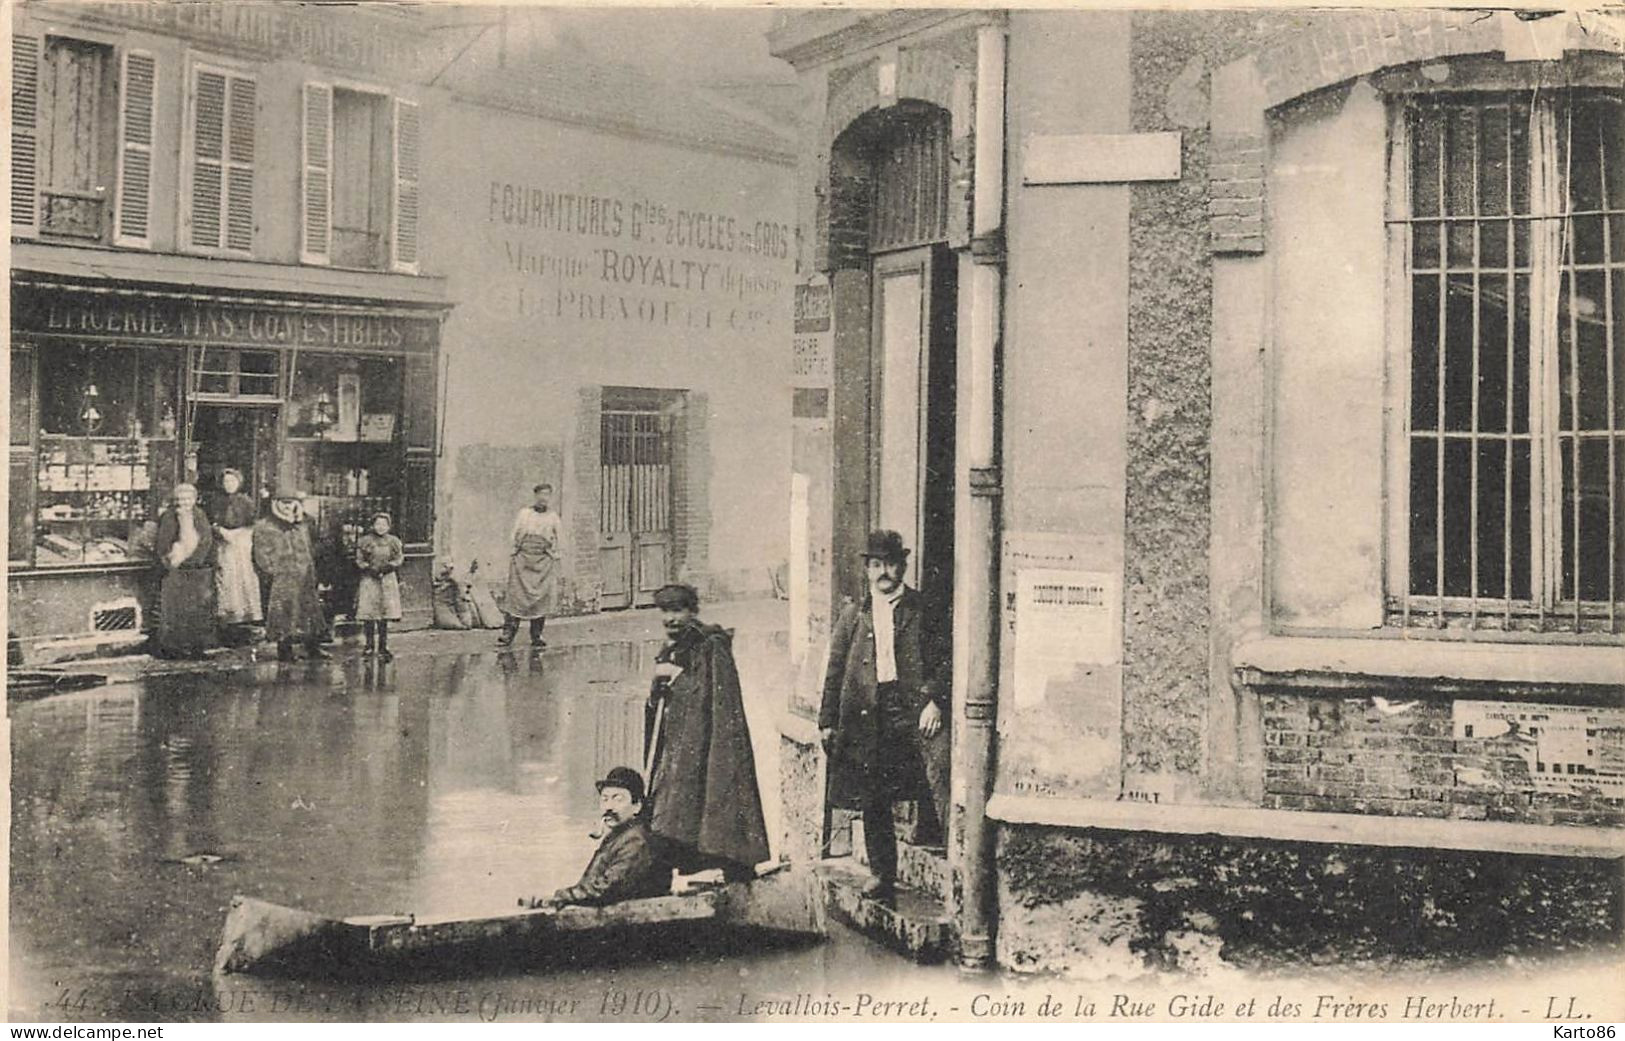 Levallois Perret * Un Coin De La Rue Gide Et Des Frères Herbert * Crue Seine Janvier 1910 * Inondation * épicerie - Levallois Perret